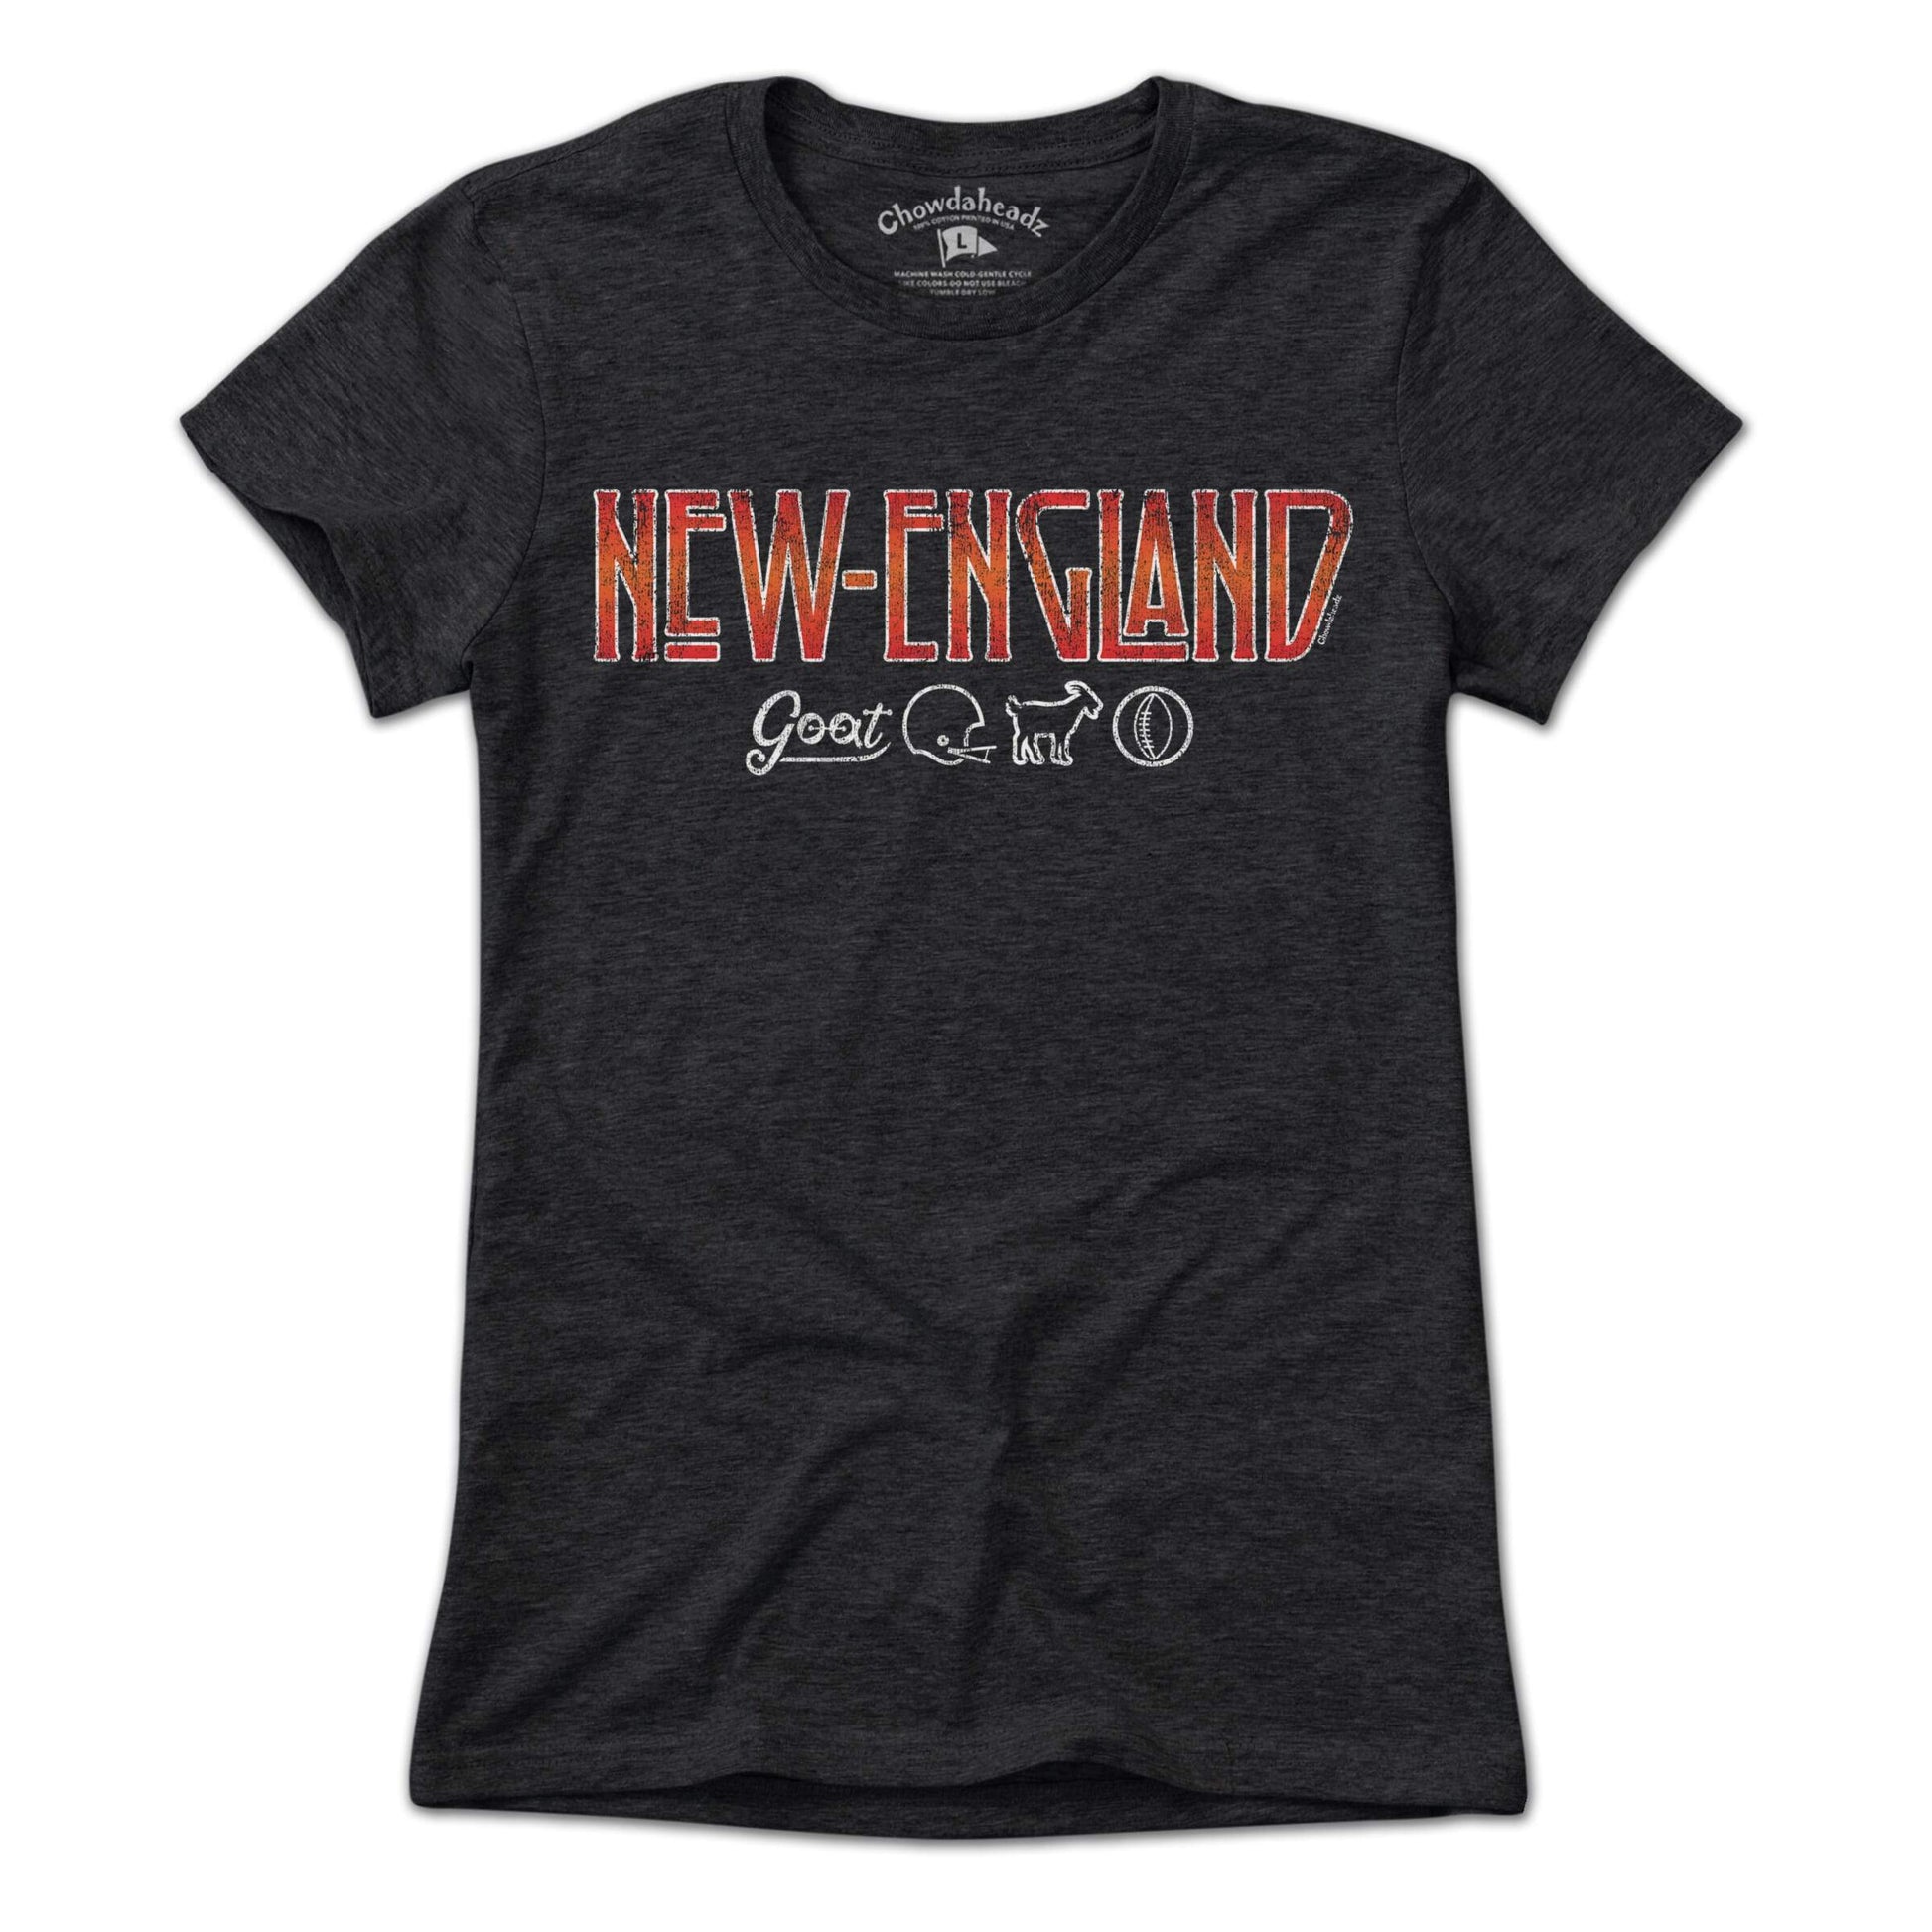 New England Rocks T-Shirt - Chowdaheadz